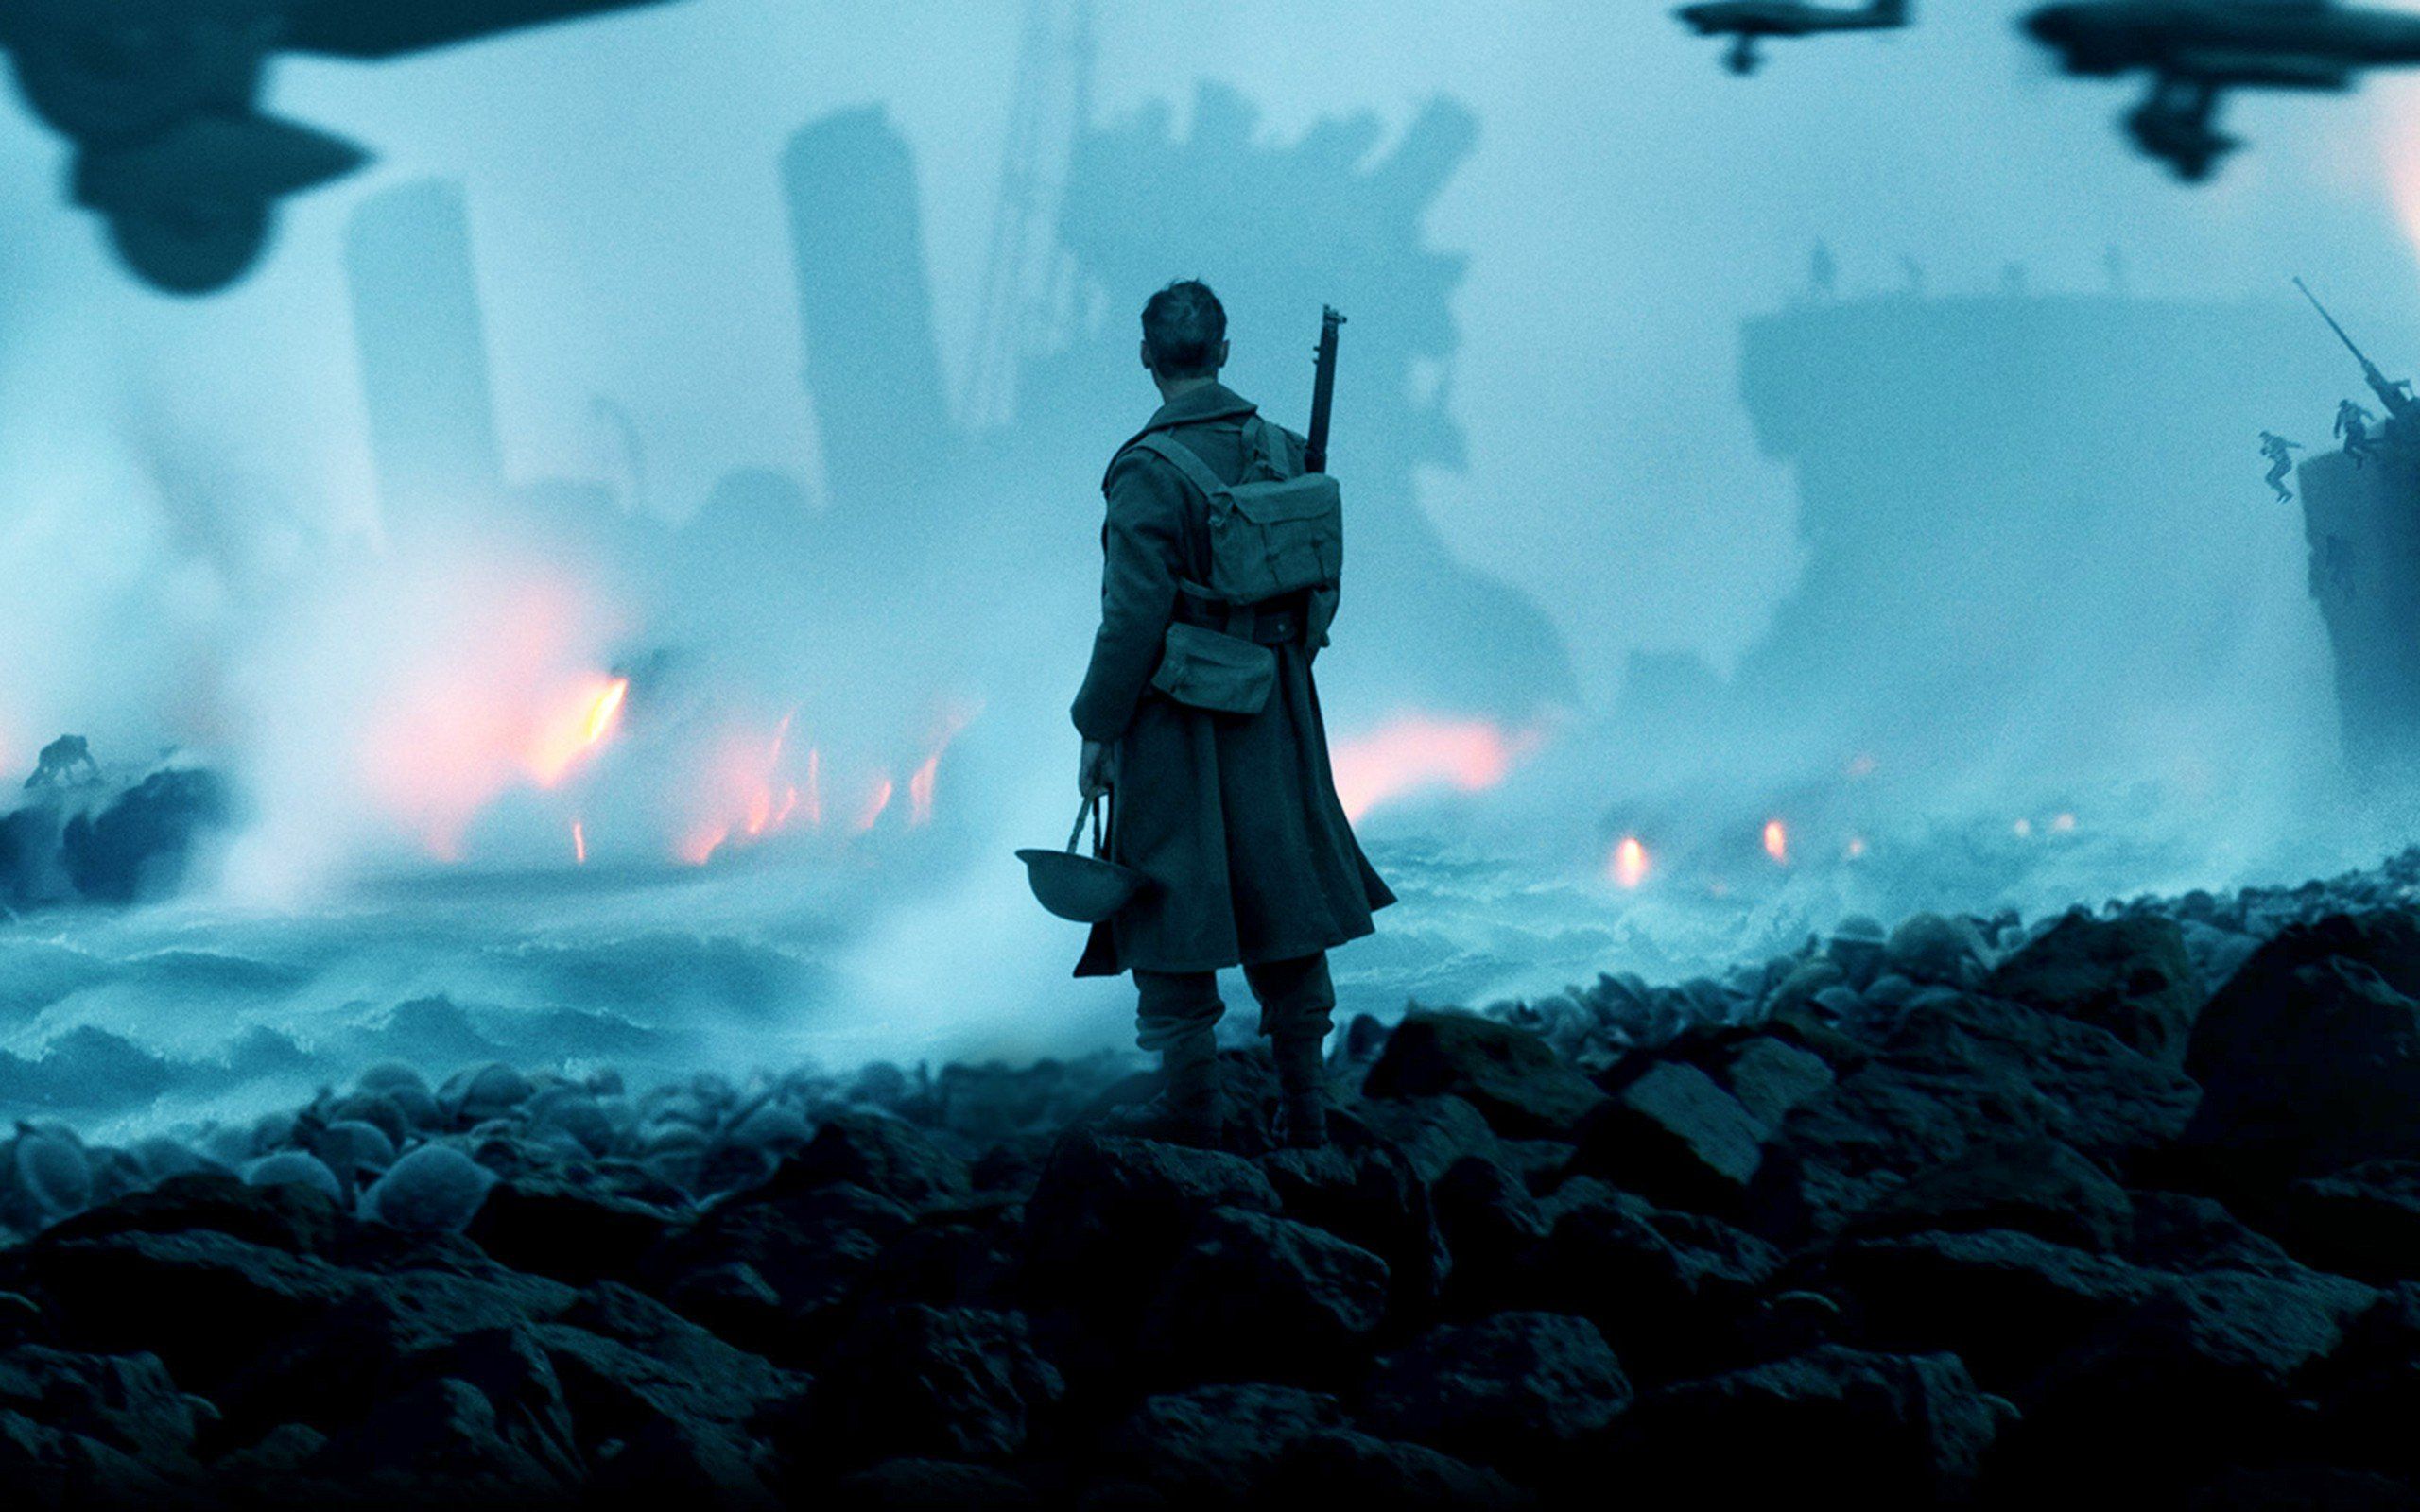 Dunkirk Movie Still Wallpapers